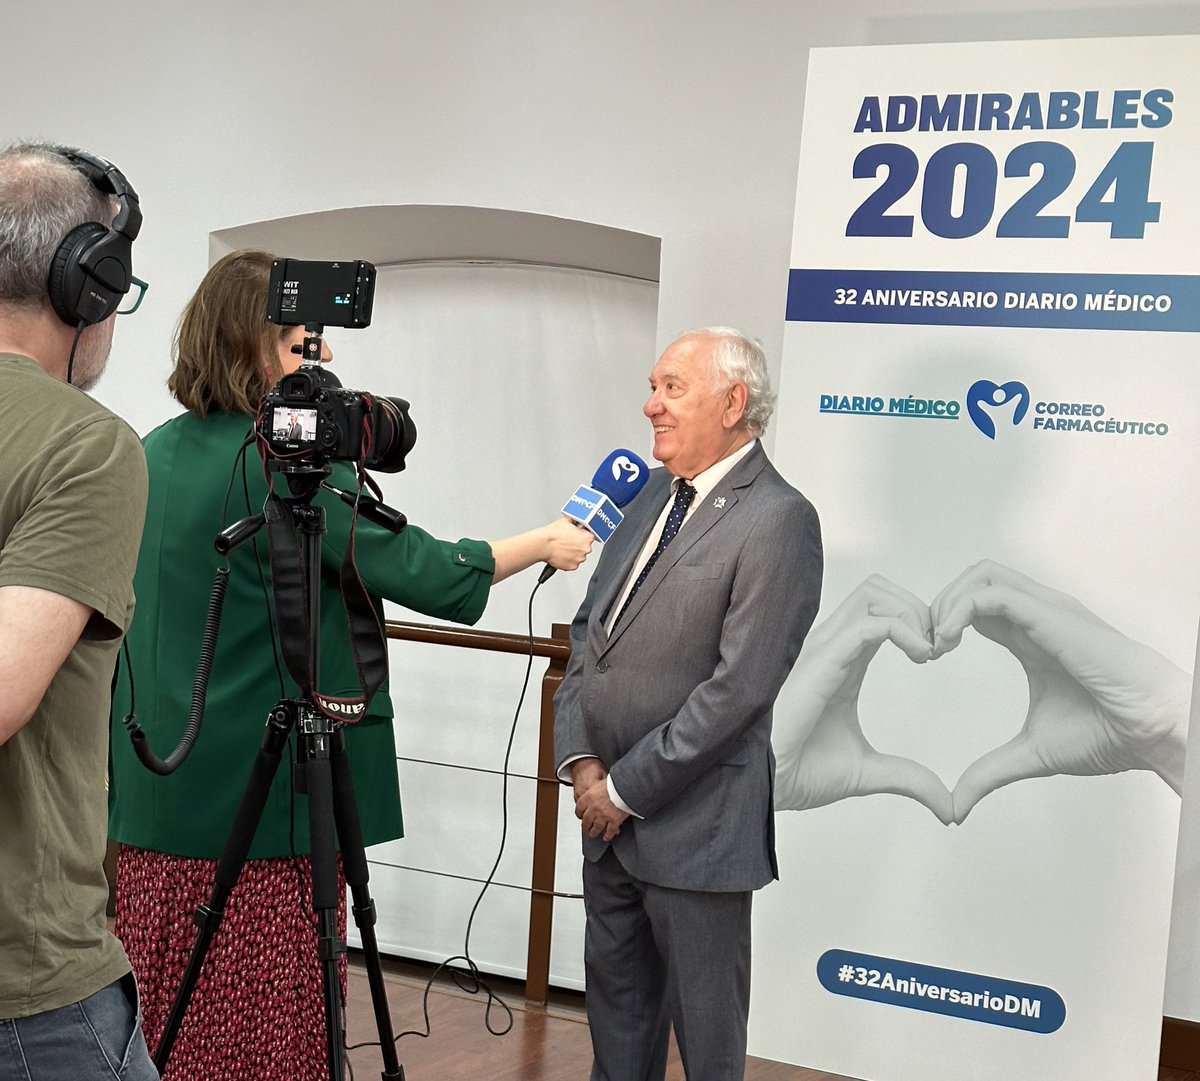 El presidente del Consejo General de Enfermería, Florentino Pérez Raya, asiste hoy al 32 aniversario de @diariomedico, donde tres enfermeras serán galardonadas en la gala de los Premios Admirables #32AniversarioDM